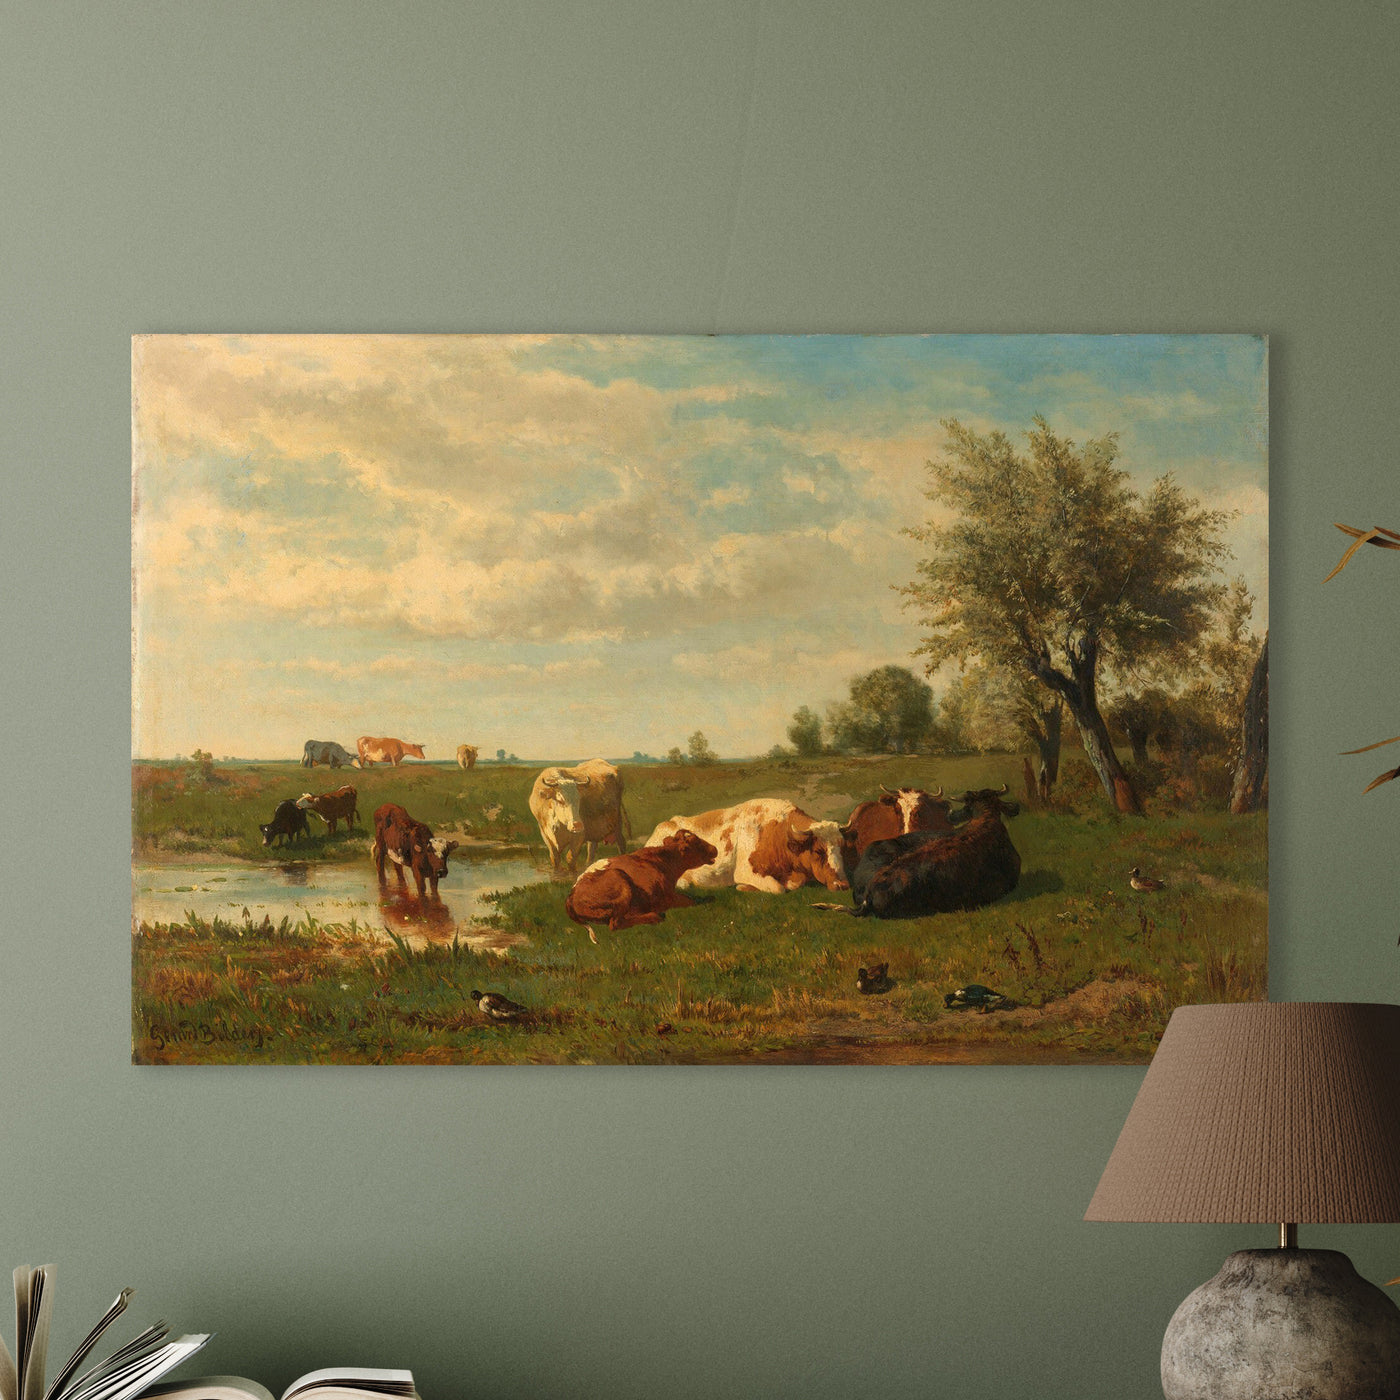 Kühe auf der Wiese, Gerard Bilders, 1860 - 1865